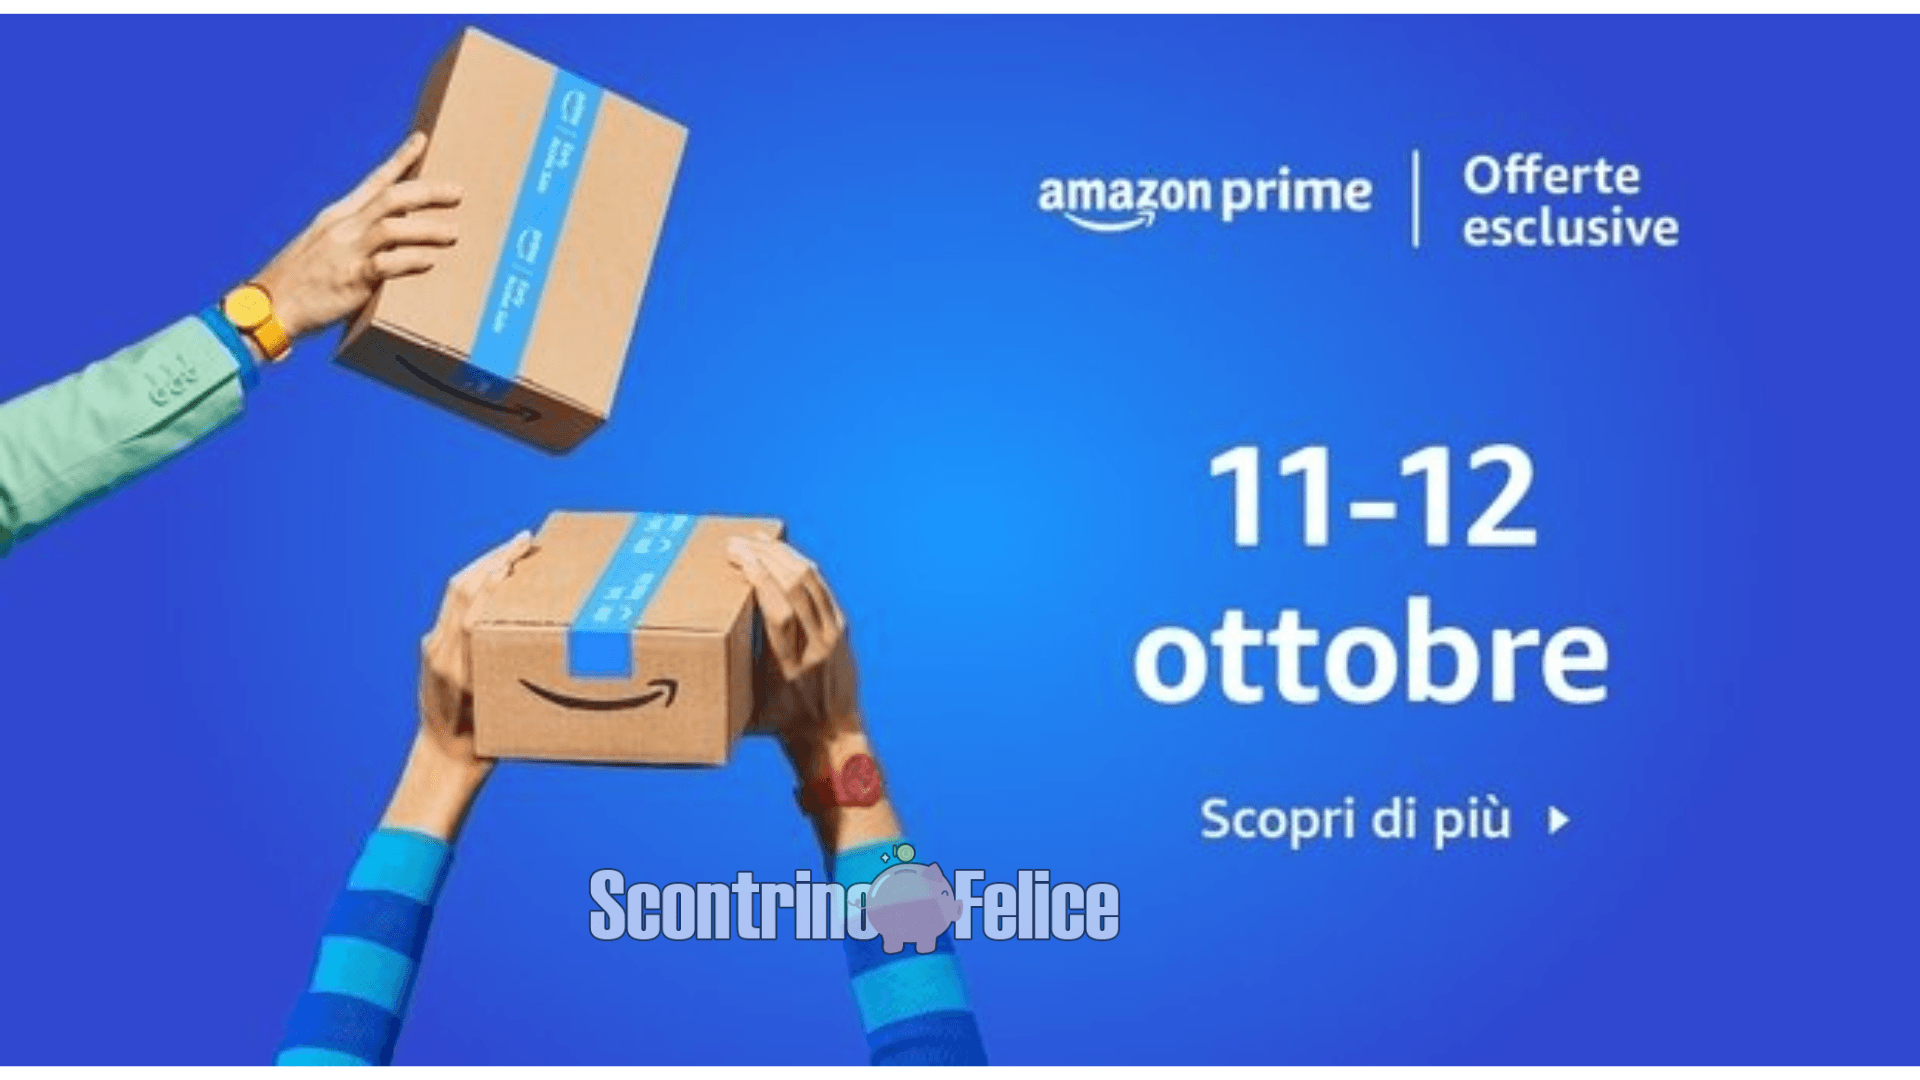 Offerte esclusive Amazon Prime 11-12 ottobre 2022: scopriamo le migliori! 3